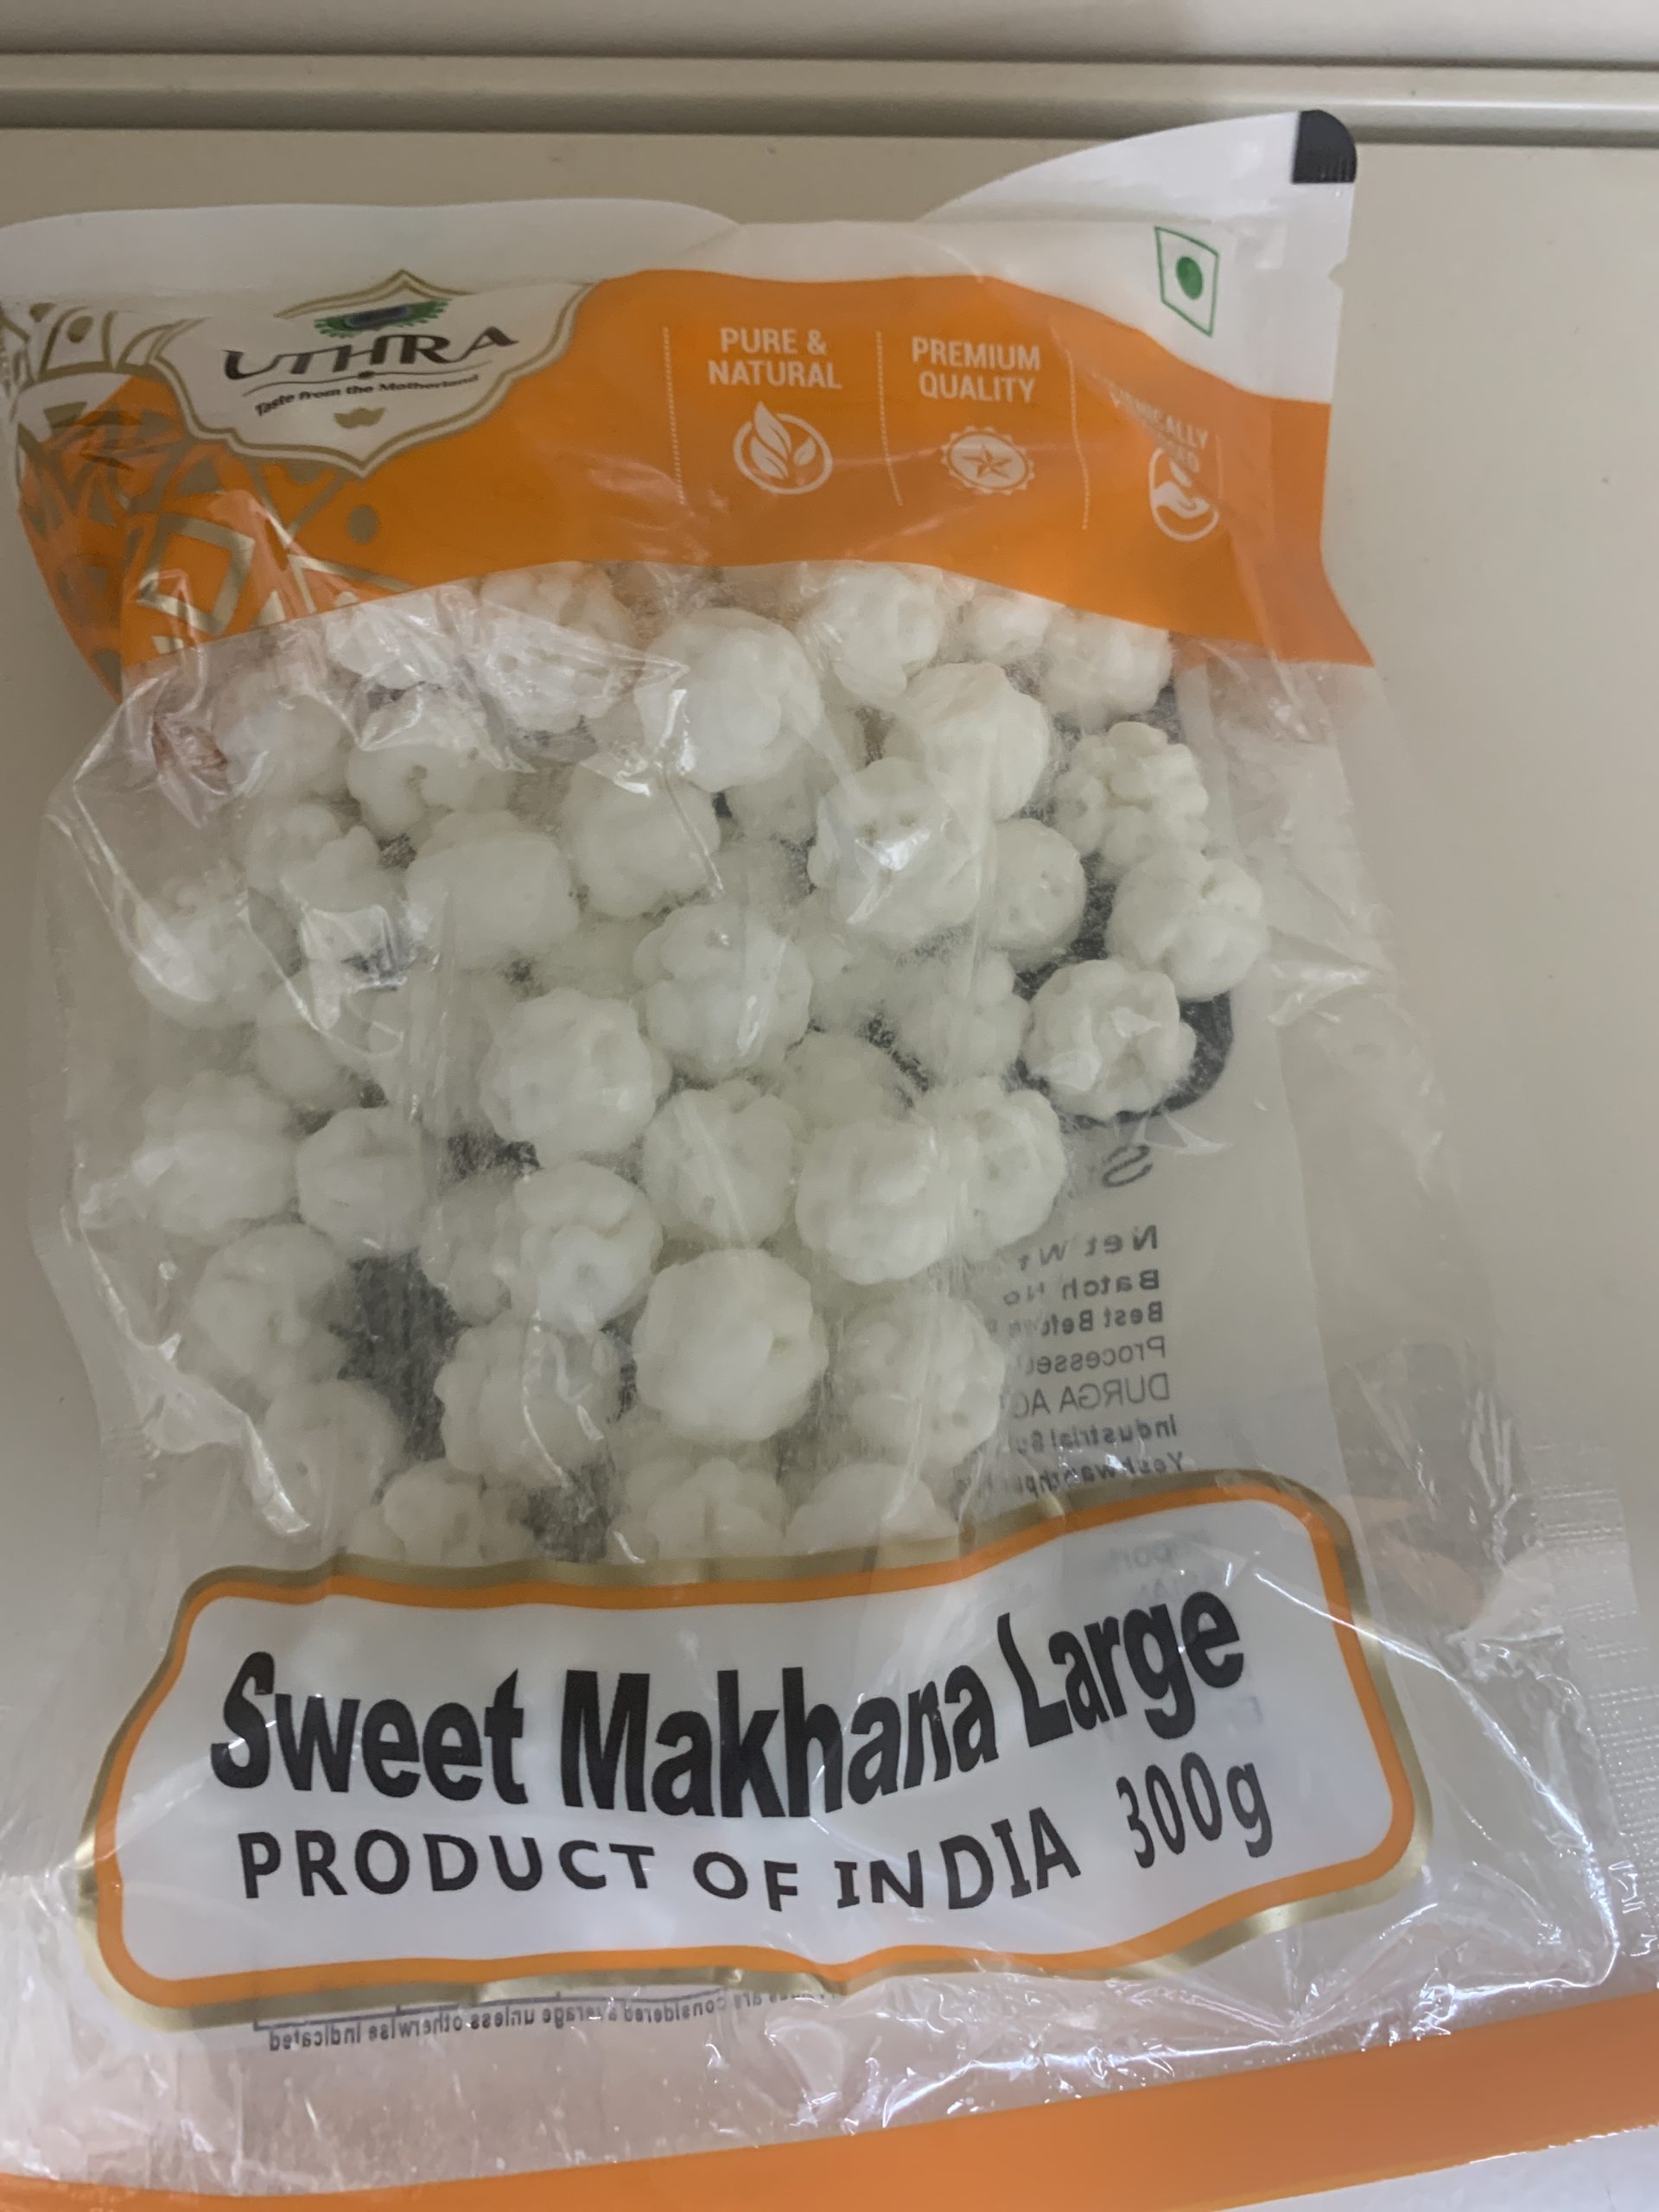 Uthra Sweet Makhana large 300g